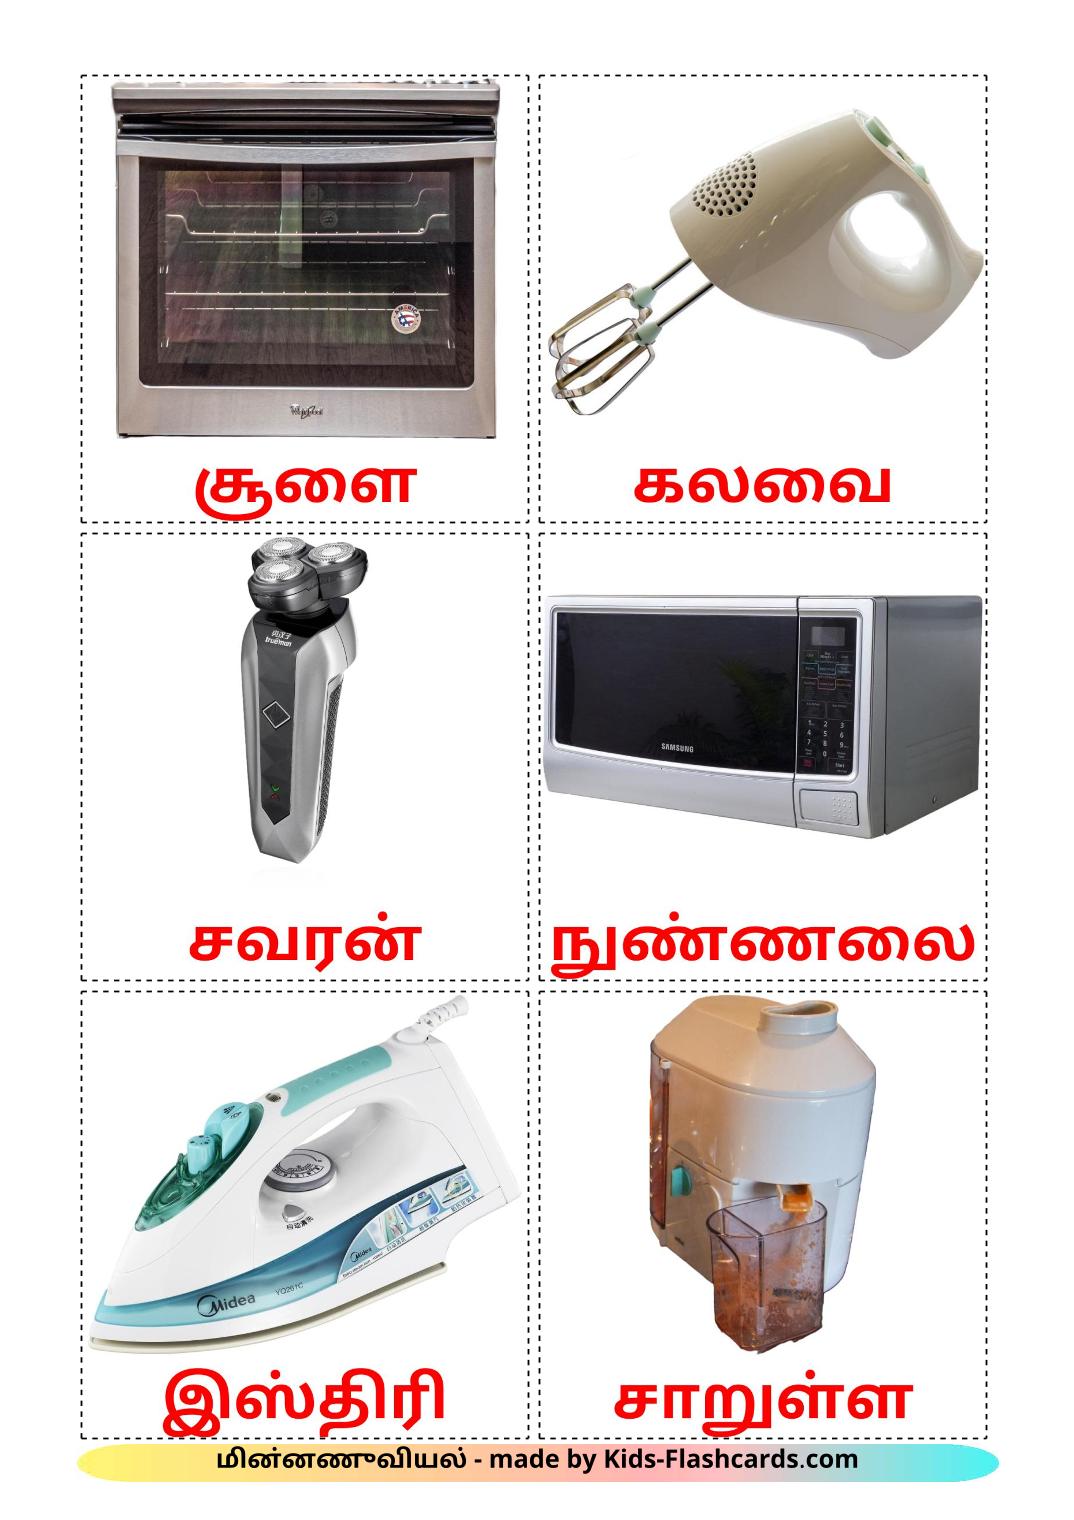 Электрические приборы - 32 Карточки Домана на тамильском